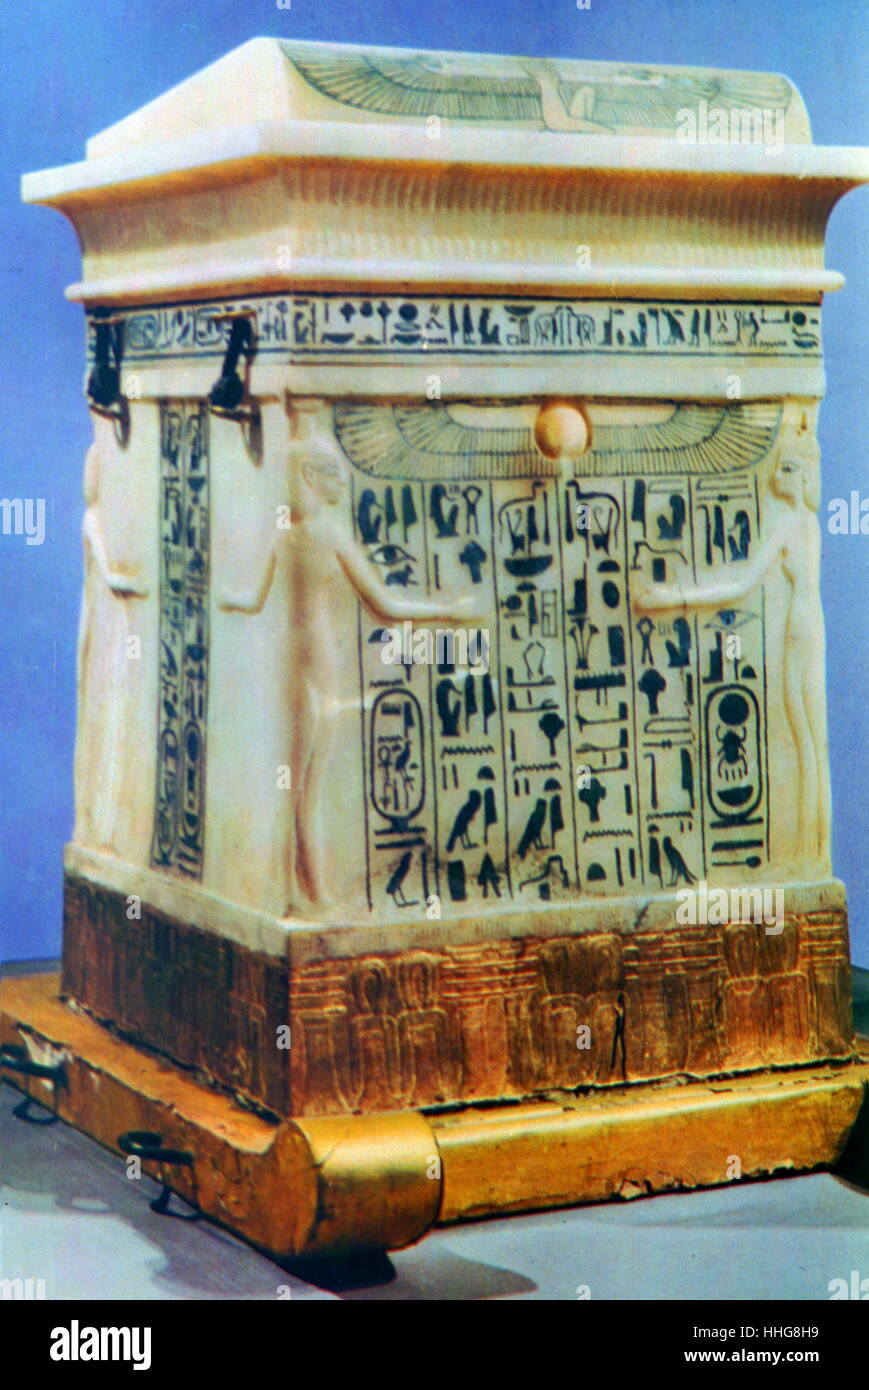 Canopes en albâtre poitrine, utilisé pour contenir les organes internes de pendant le processus de la momification. Trésors du tombeau de Toutankhamon, découvert en 1922. Le baiser était un pharaon égyptien de la xviiie dynastie (jugé c. 1332-1323 av. J.-C.). Maintenant exposée dans le Musée du Caire. Banque D'Images